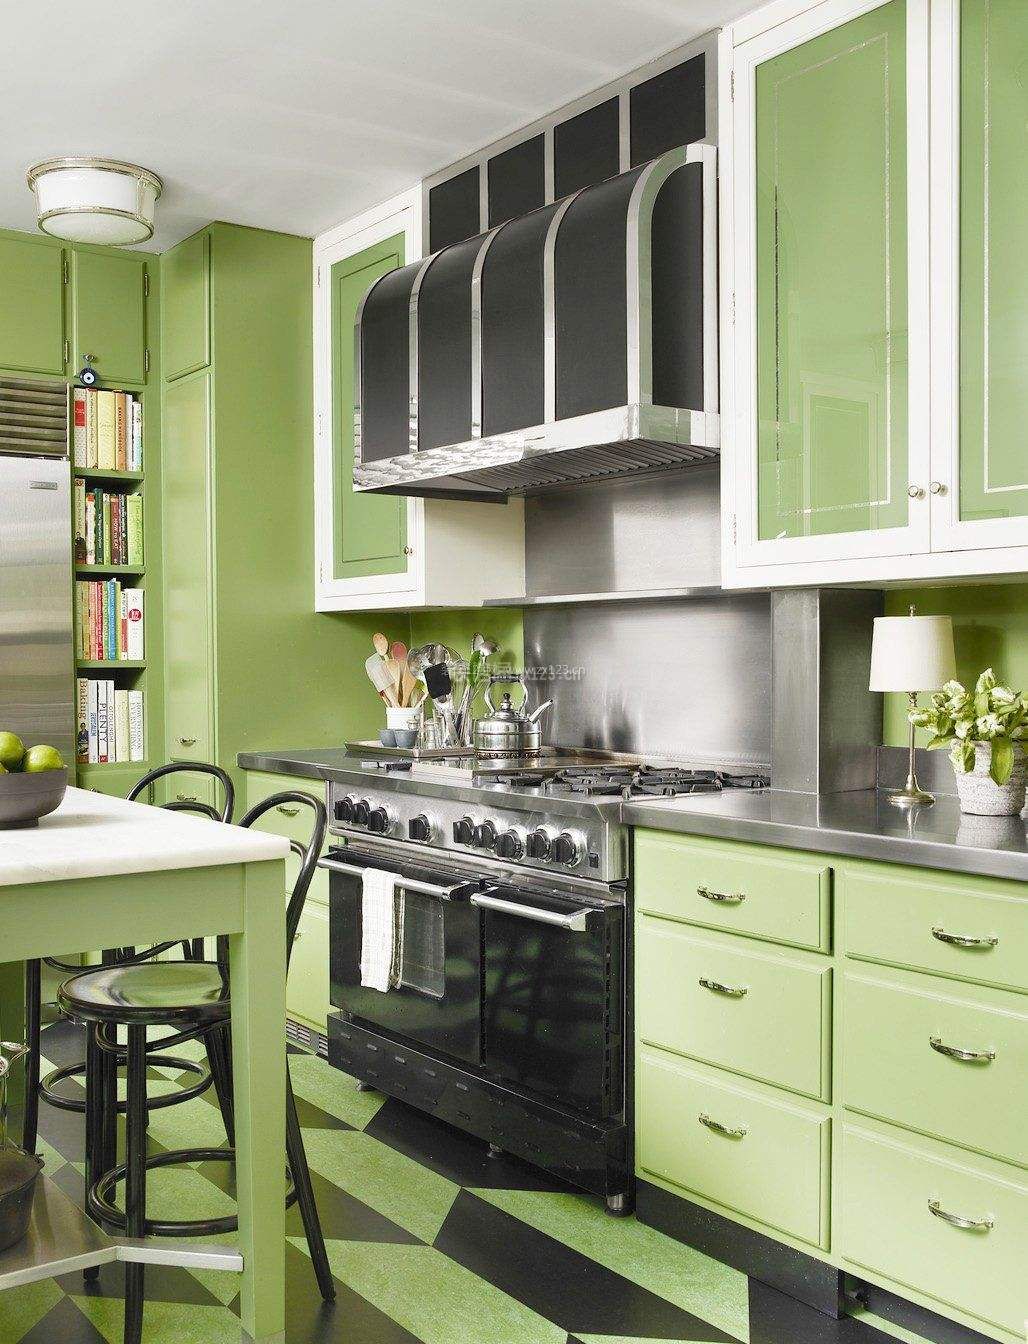 地中海风格厨房果绿色橱柜装修效果图